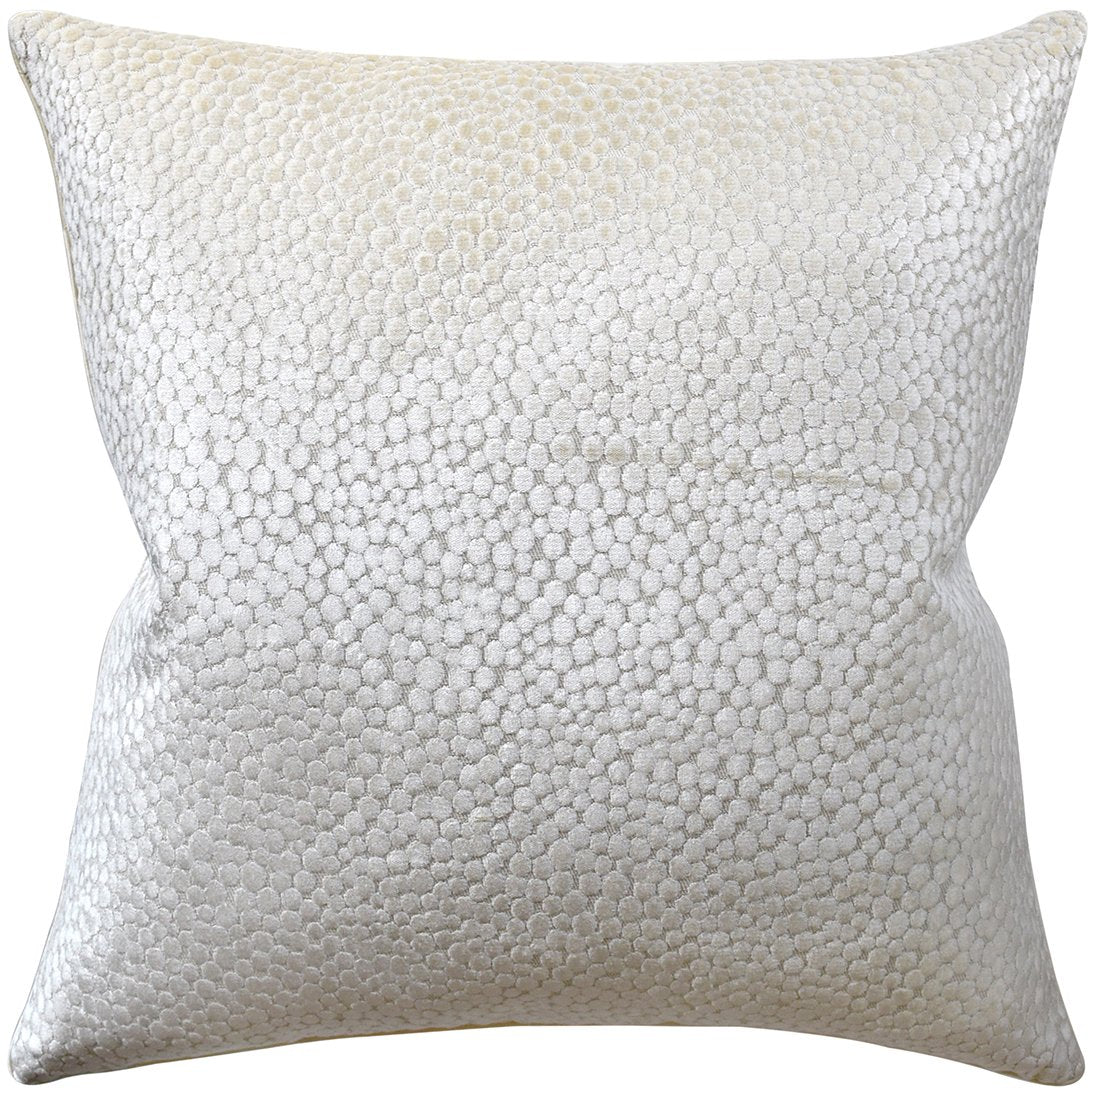 Polka Dot Plush Natural Pillow | Ryan Studio Pillows at Fig Linens